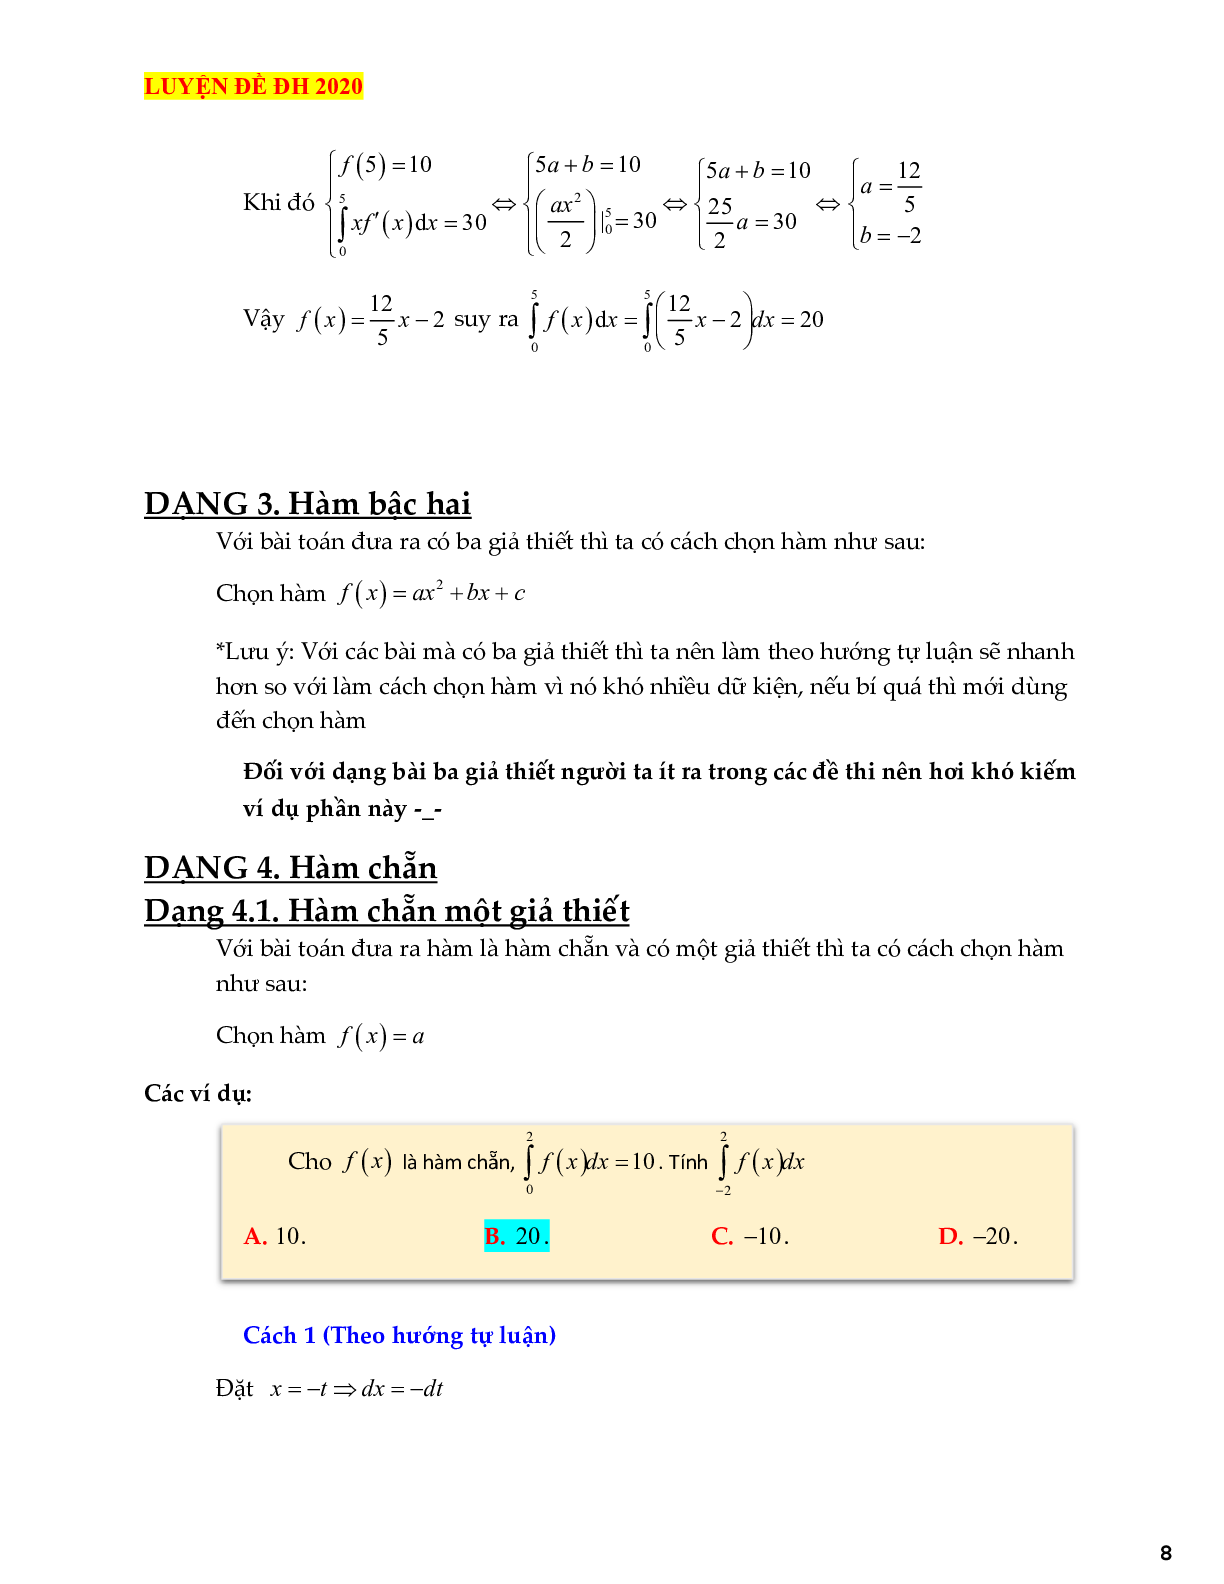 Kỹ thuật chọn hàm trong các bài toán tích phân tử cơ bản đến vận dụng cao (trang 8)